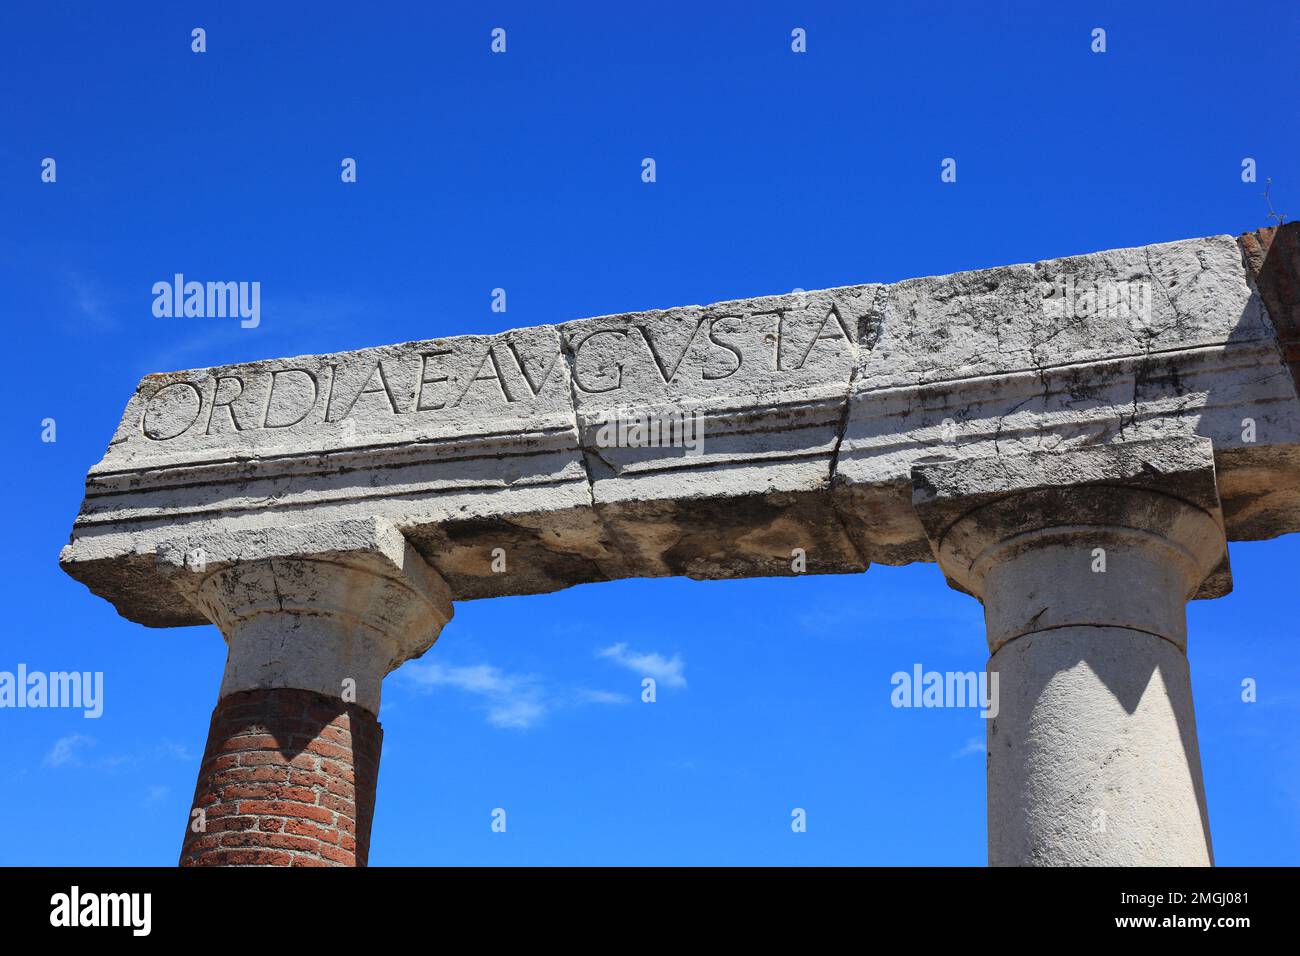 Das Forum, Pompeji, Antike Stadt in Kampanien am Golf von Neapel, beim Ausbruch des Vesuvs im Jahr 79 n. Chr. verschüttet, Italia Foto Stock